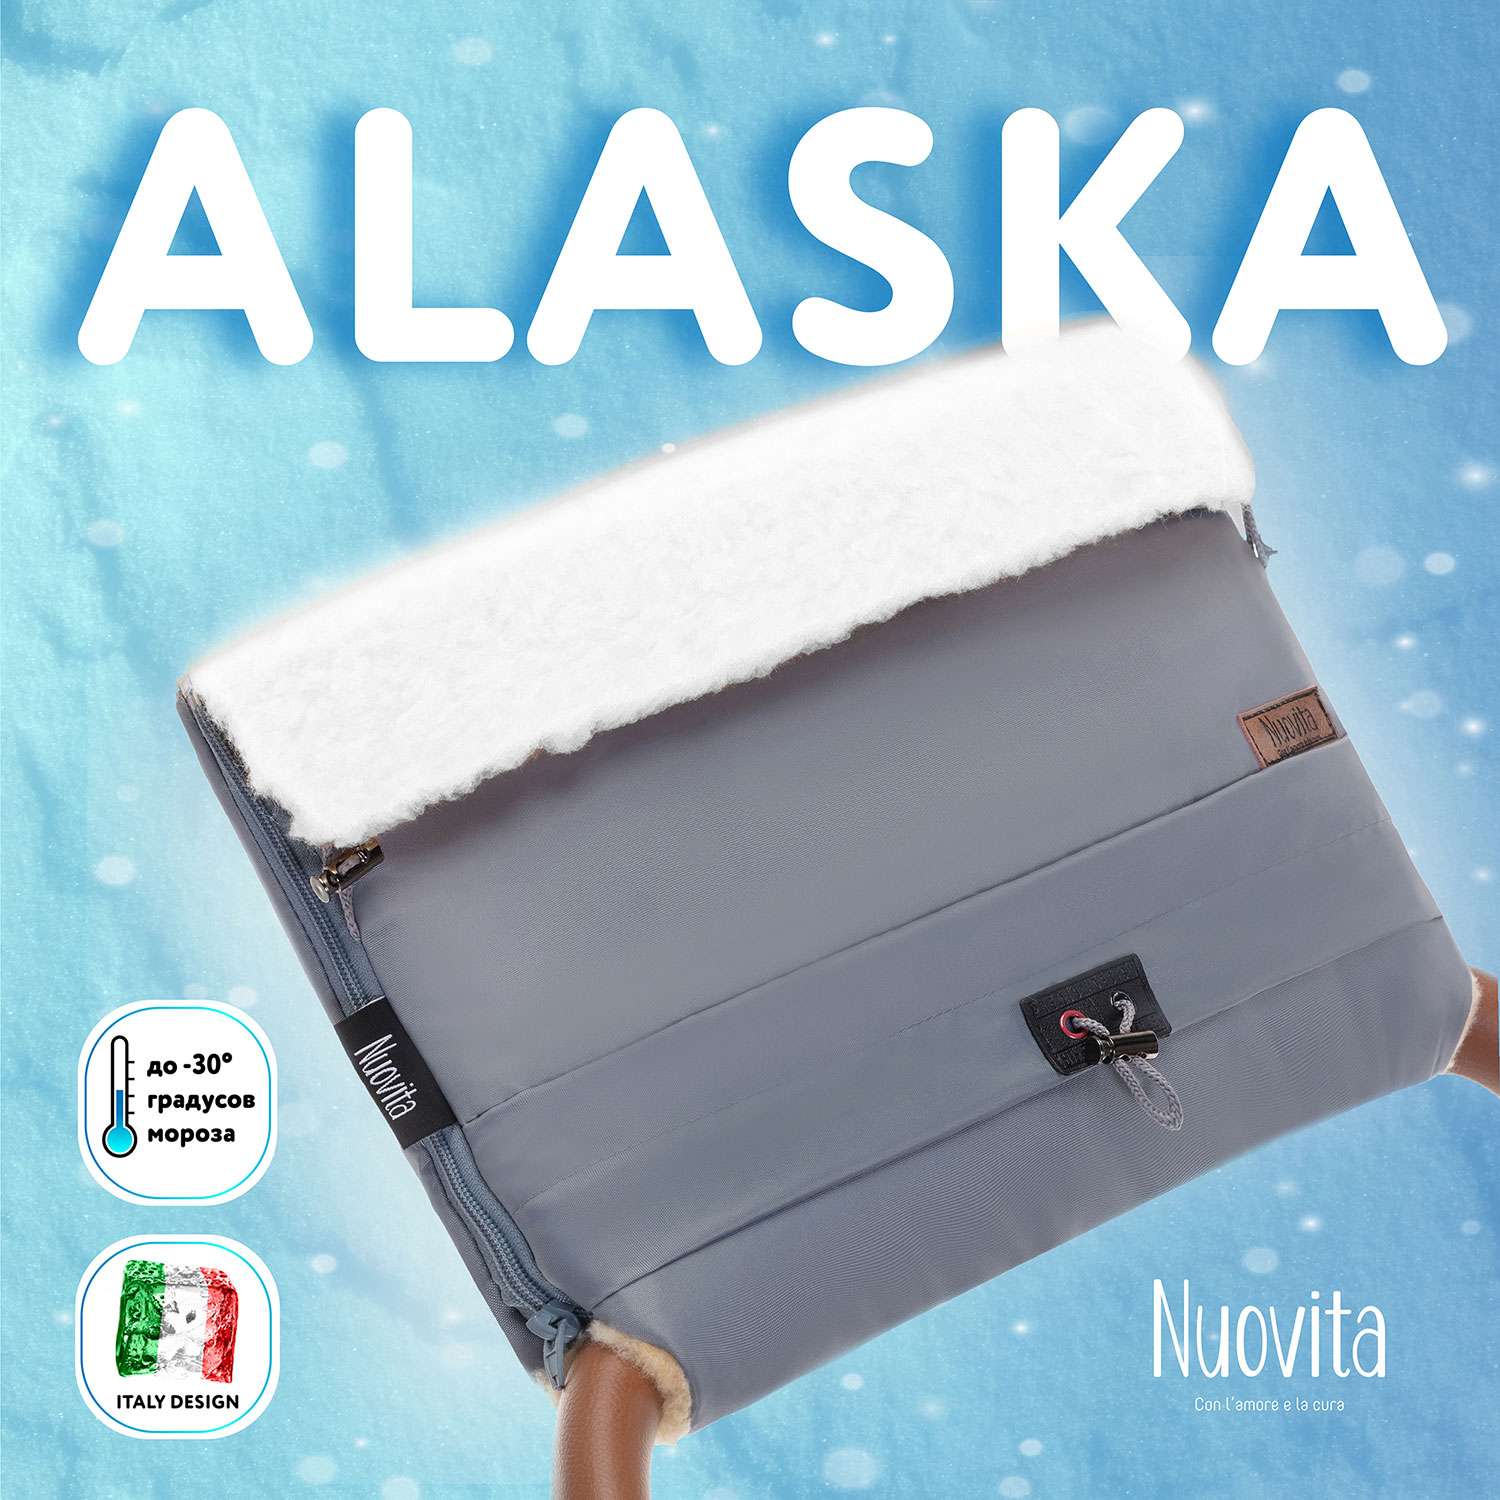 Муфта для коляски Nuovita меховая Alaska Bianco Пепельный NUO_mALAB_2104 - фото 2